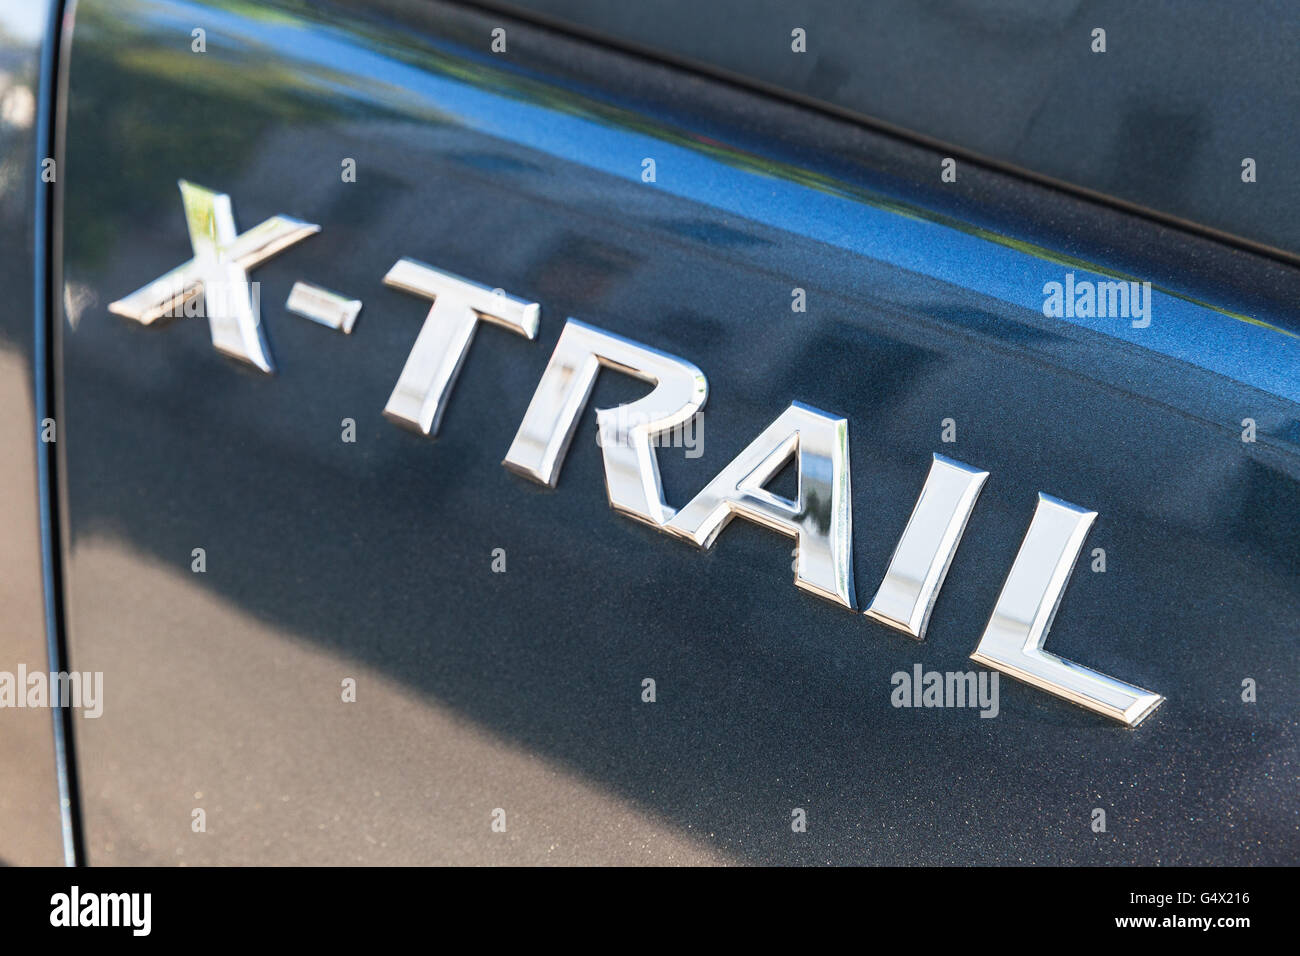 Saint-pétersbourg, Russie - 15 mai 2016 : Nissan X-Trail SUV voiture logo, photo gros plan avec selective focus Banque D'Images